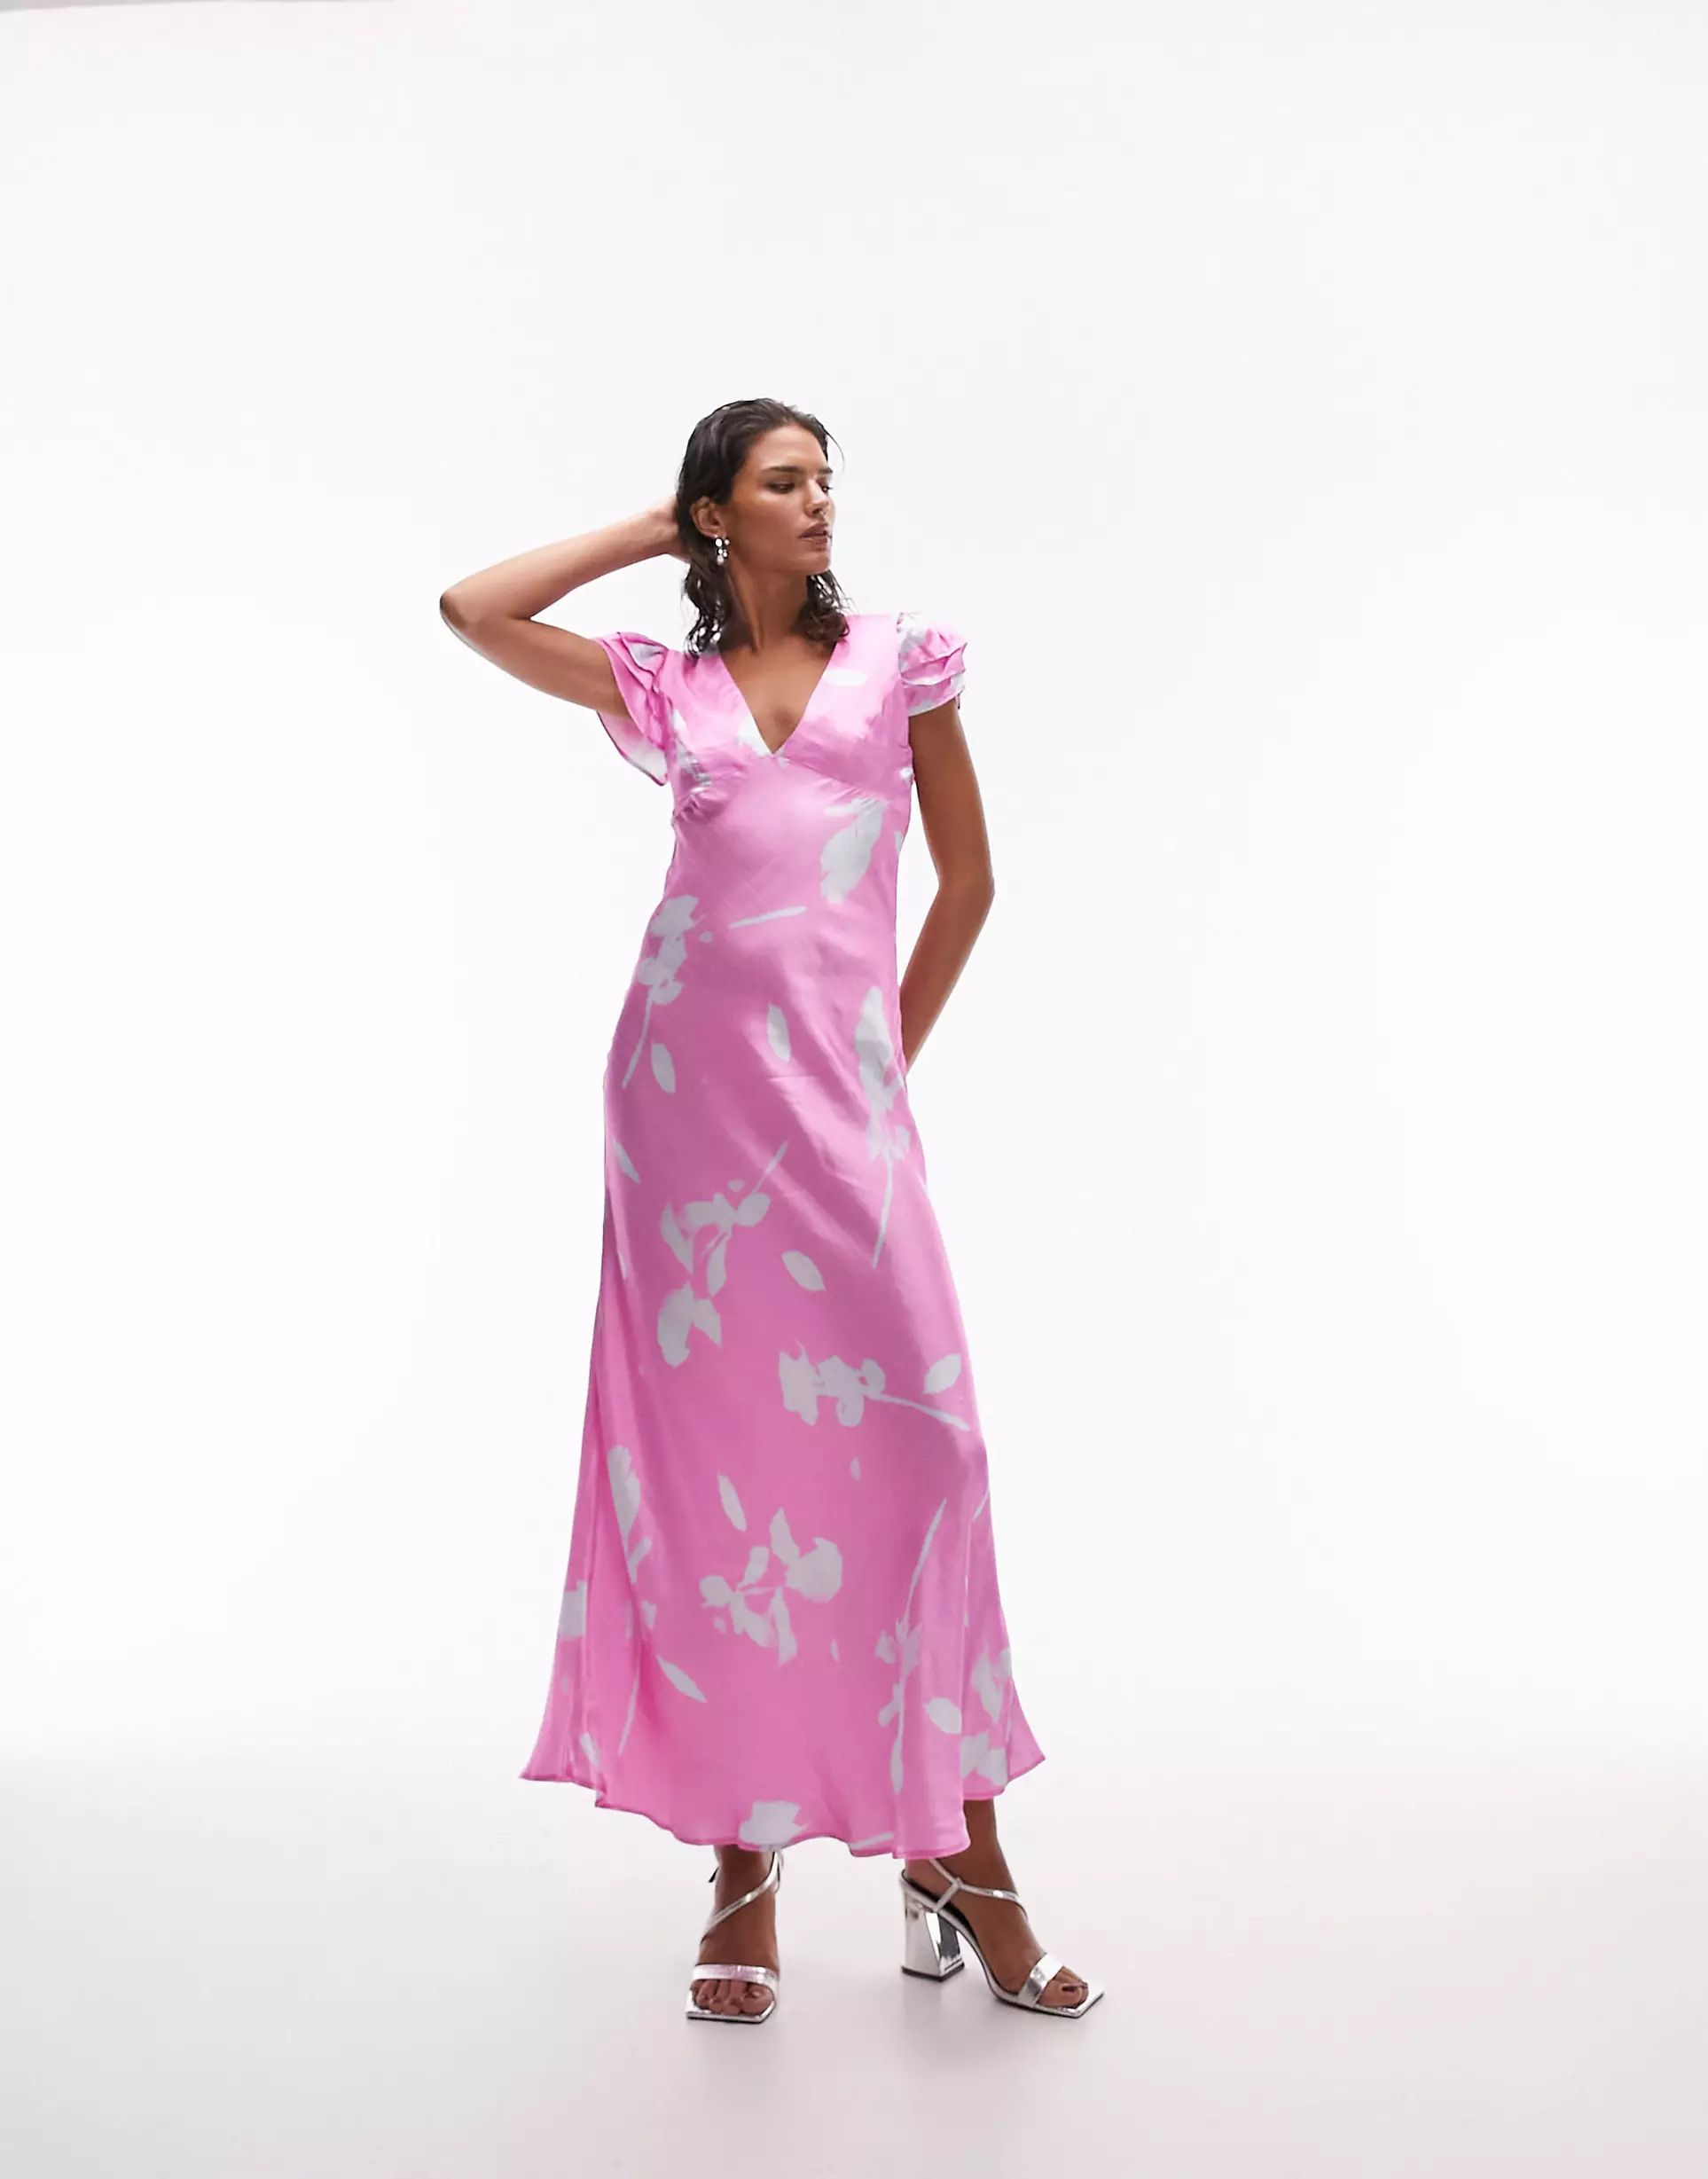 Topshop angel sleeve v neck maxi dress in pink floral print | ASOS (Global)